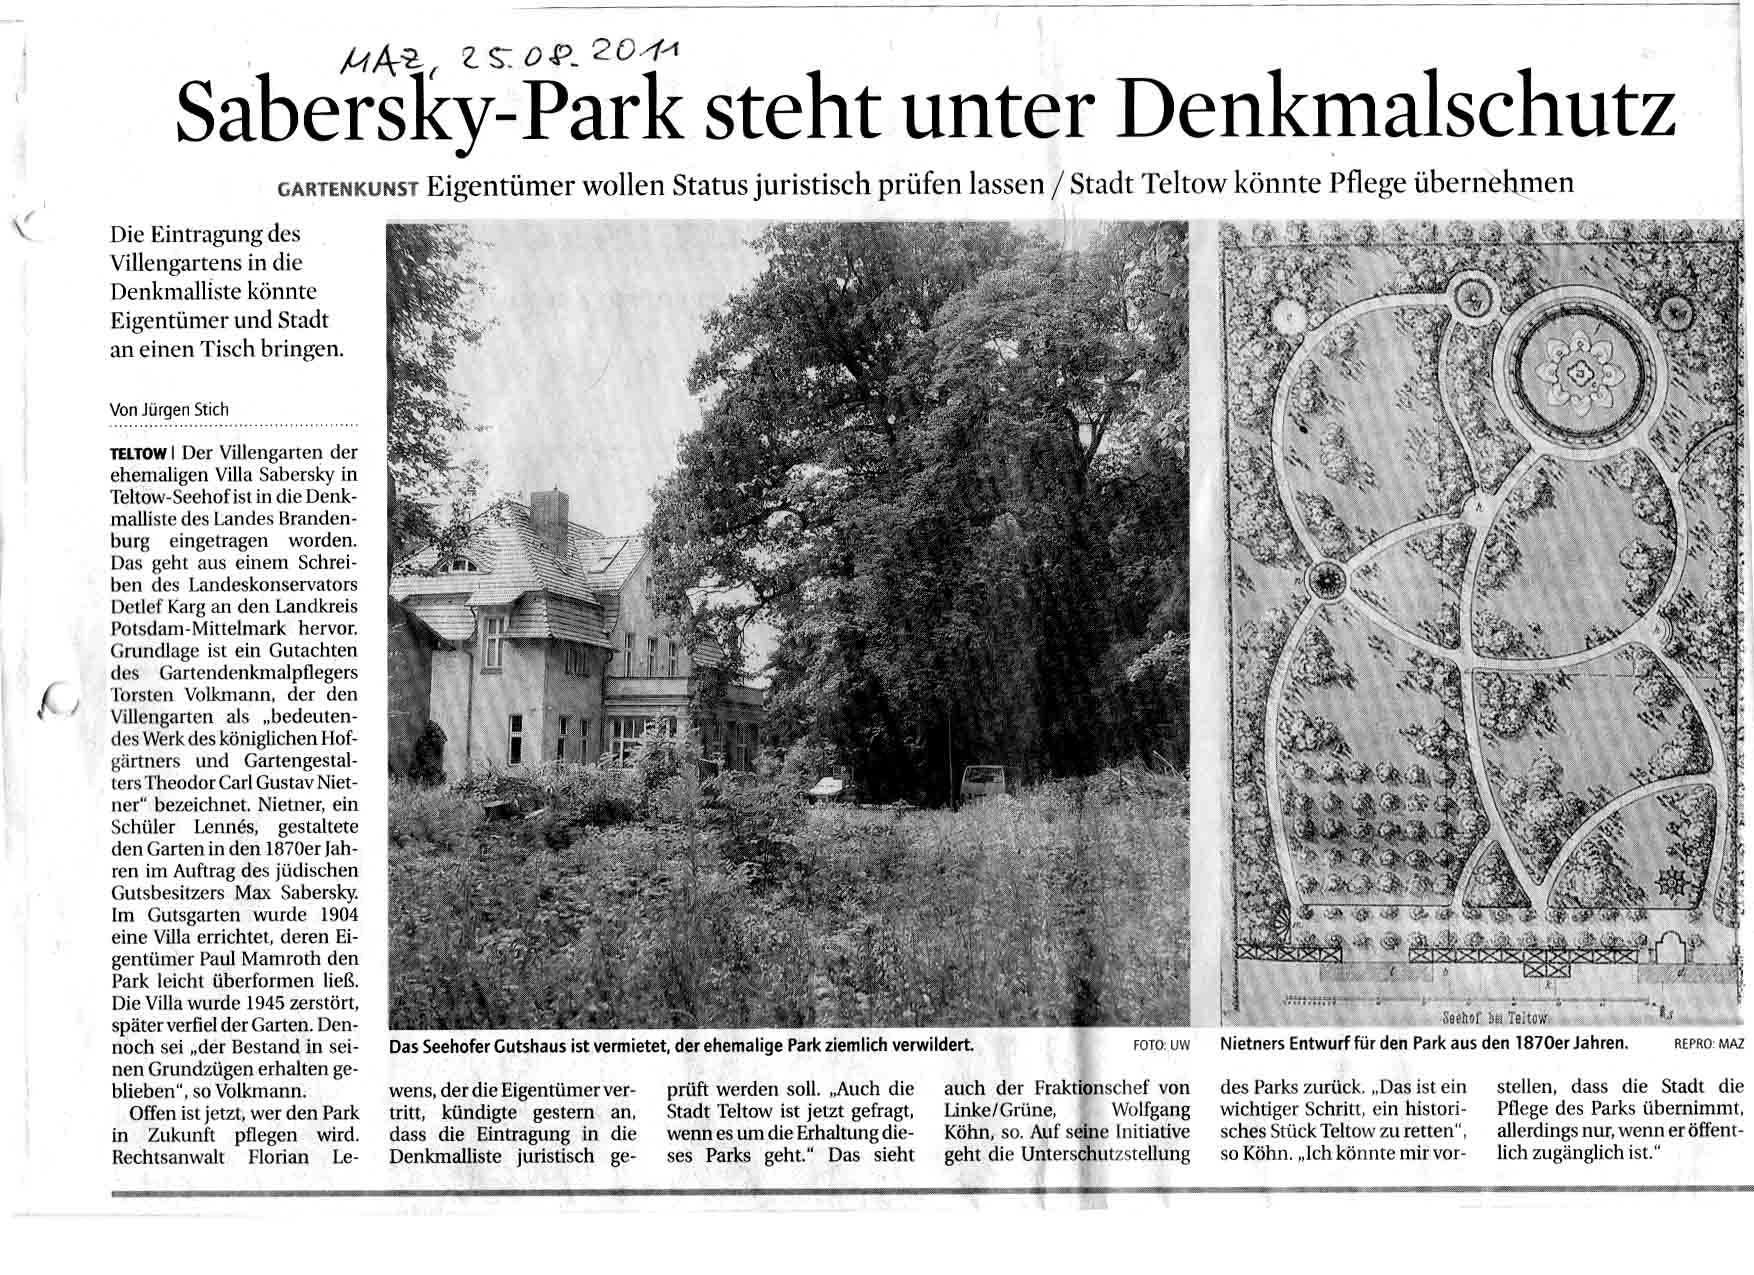 Sabersky-Park steht unter Denkmalschutz